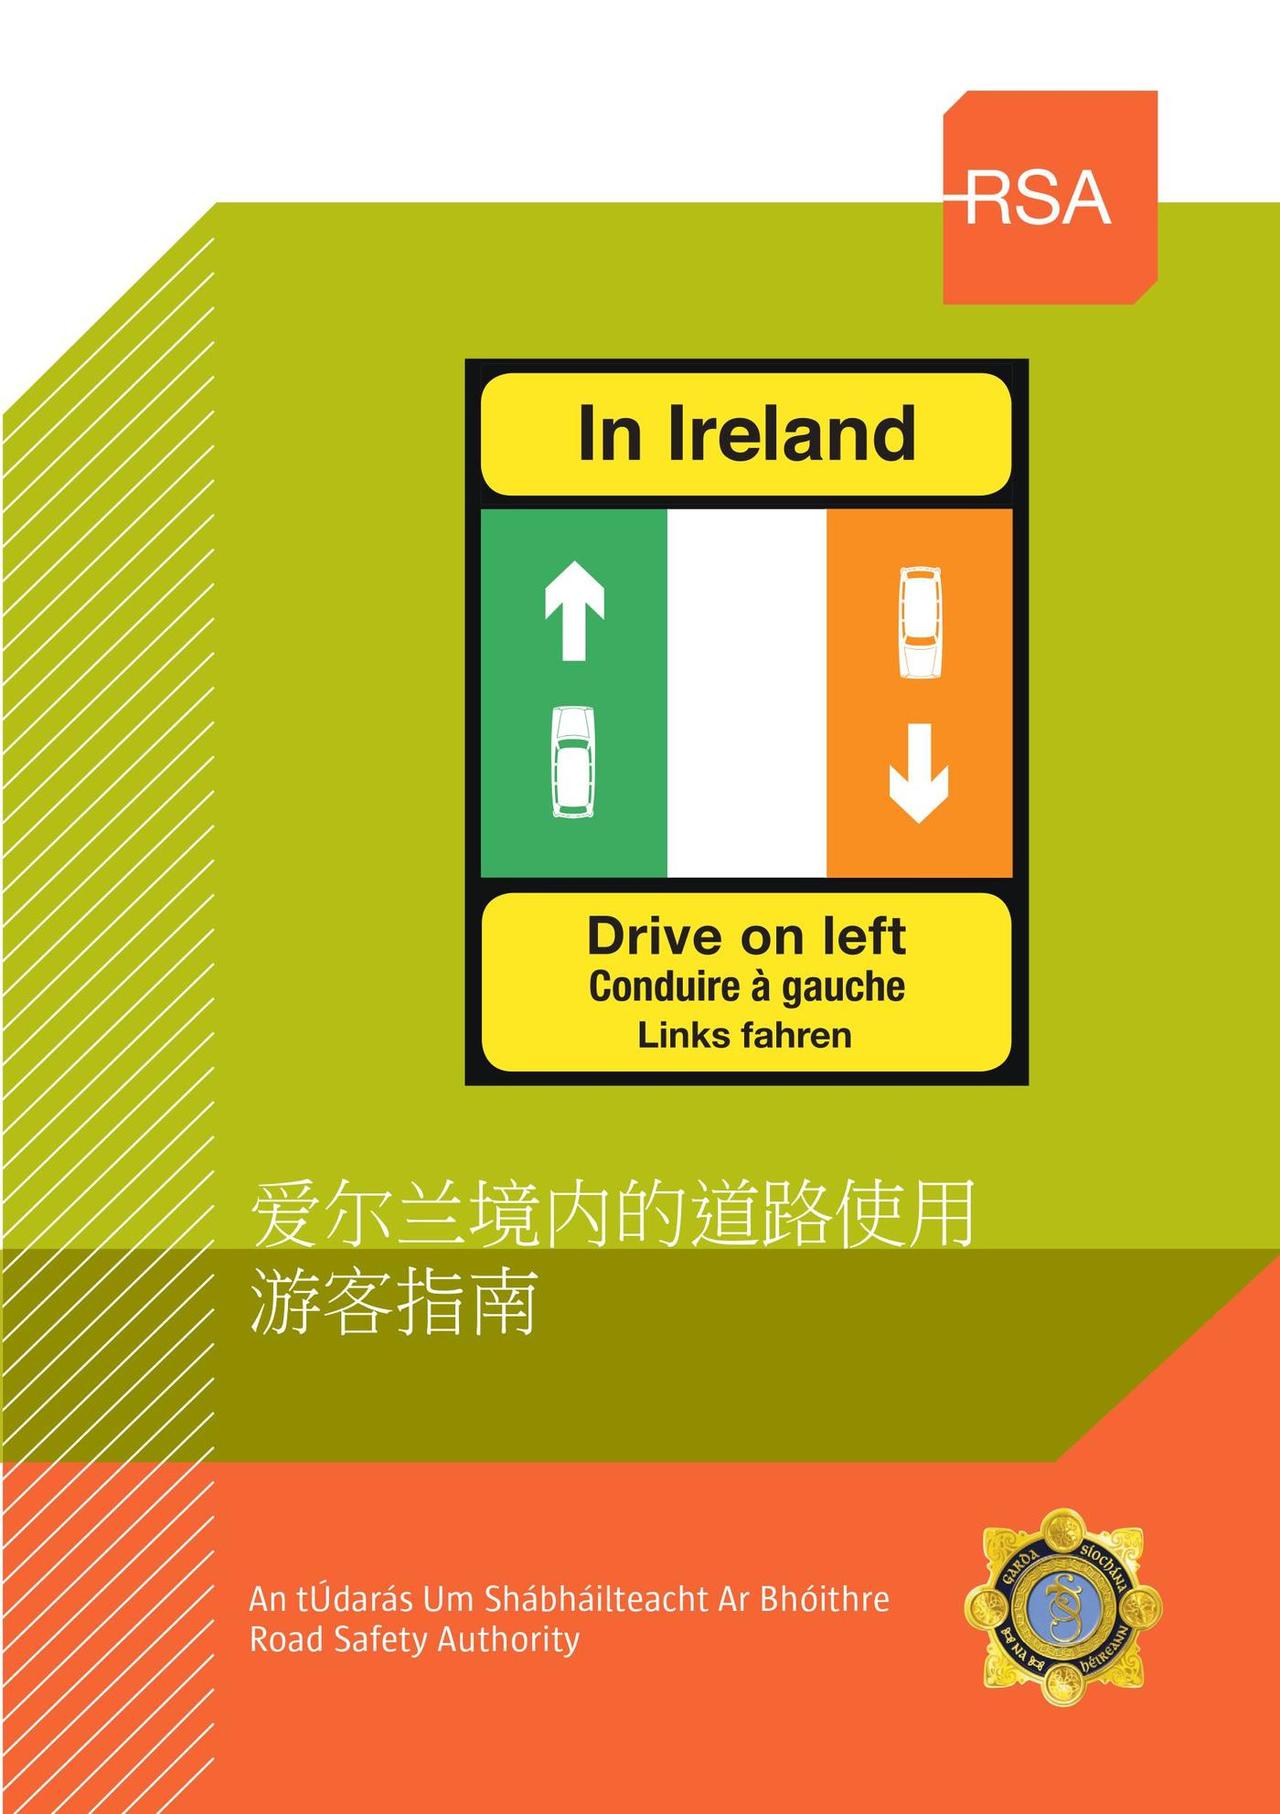 【游客指南】爱尔兰境内的道路使用和扣分处罚条例